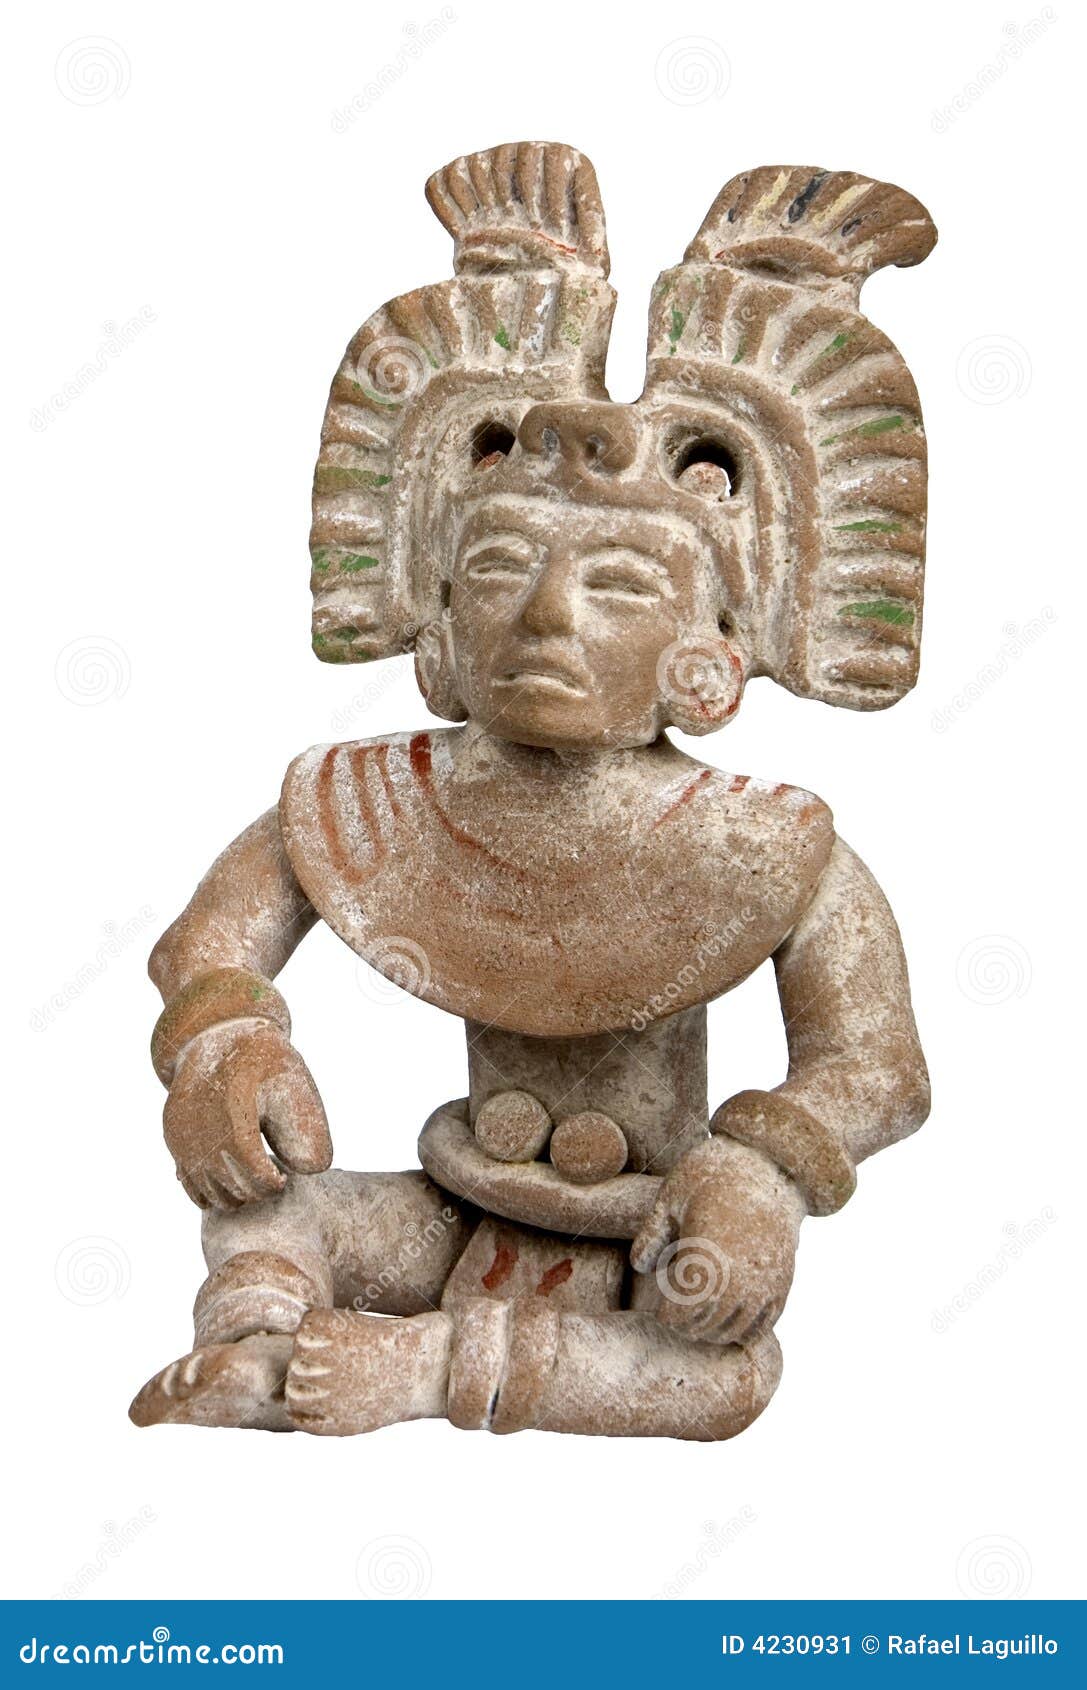 mayan terracotta